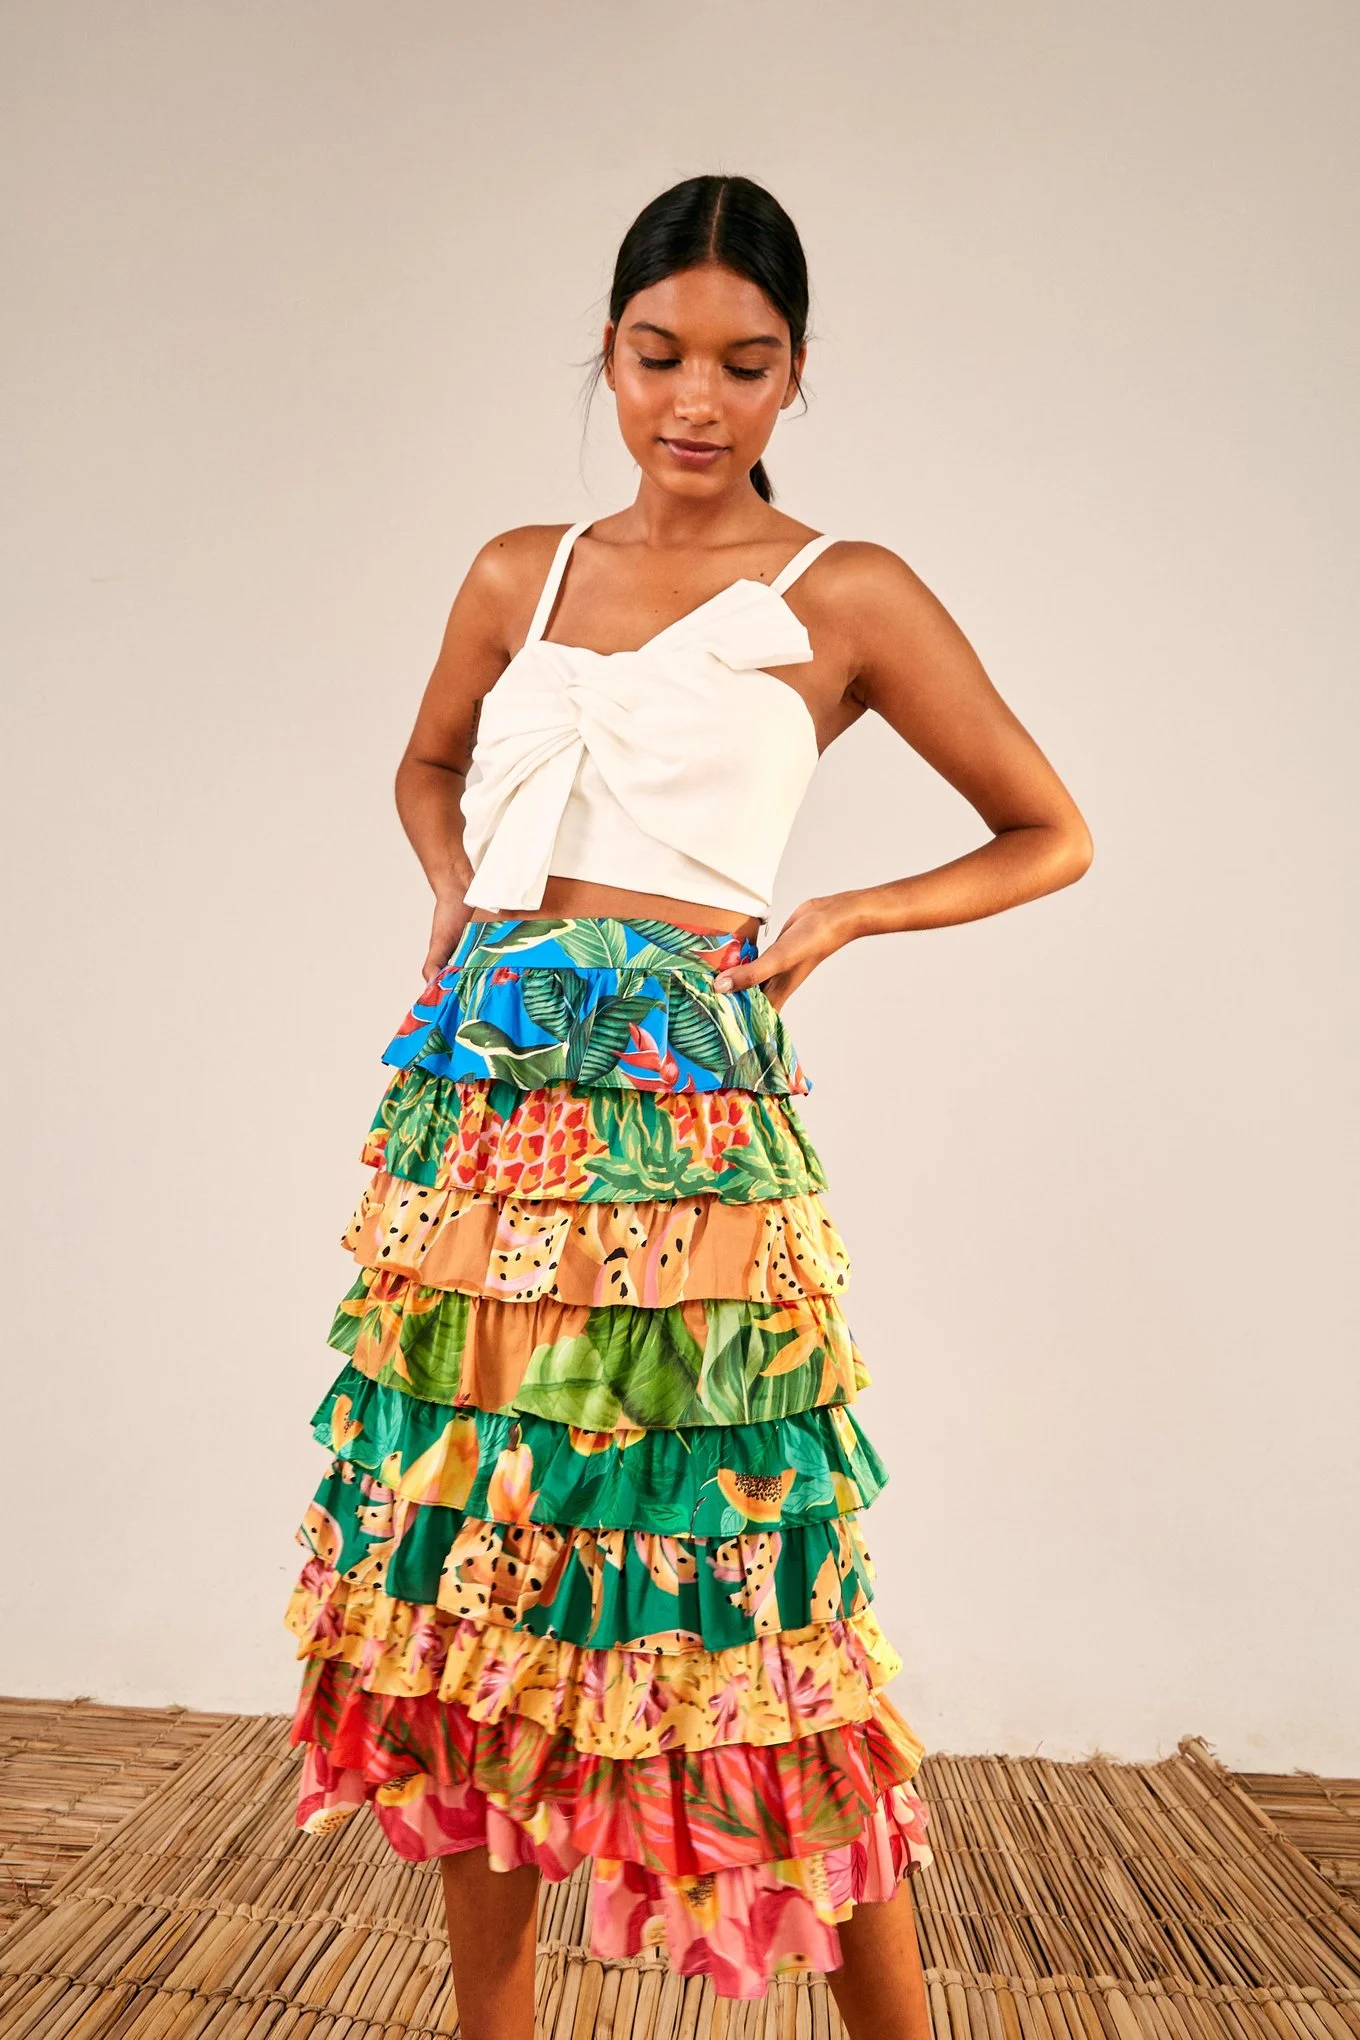 Farm Rio + Mixed prints multi layered midi skirt